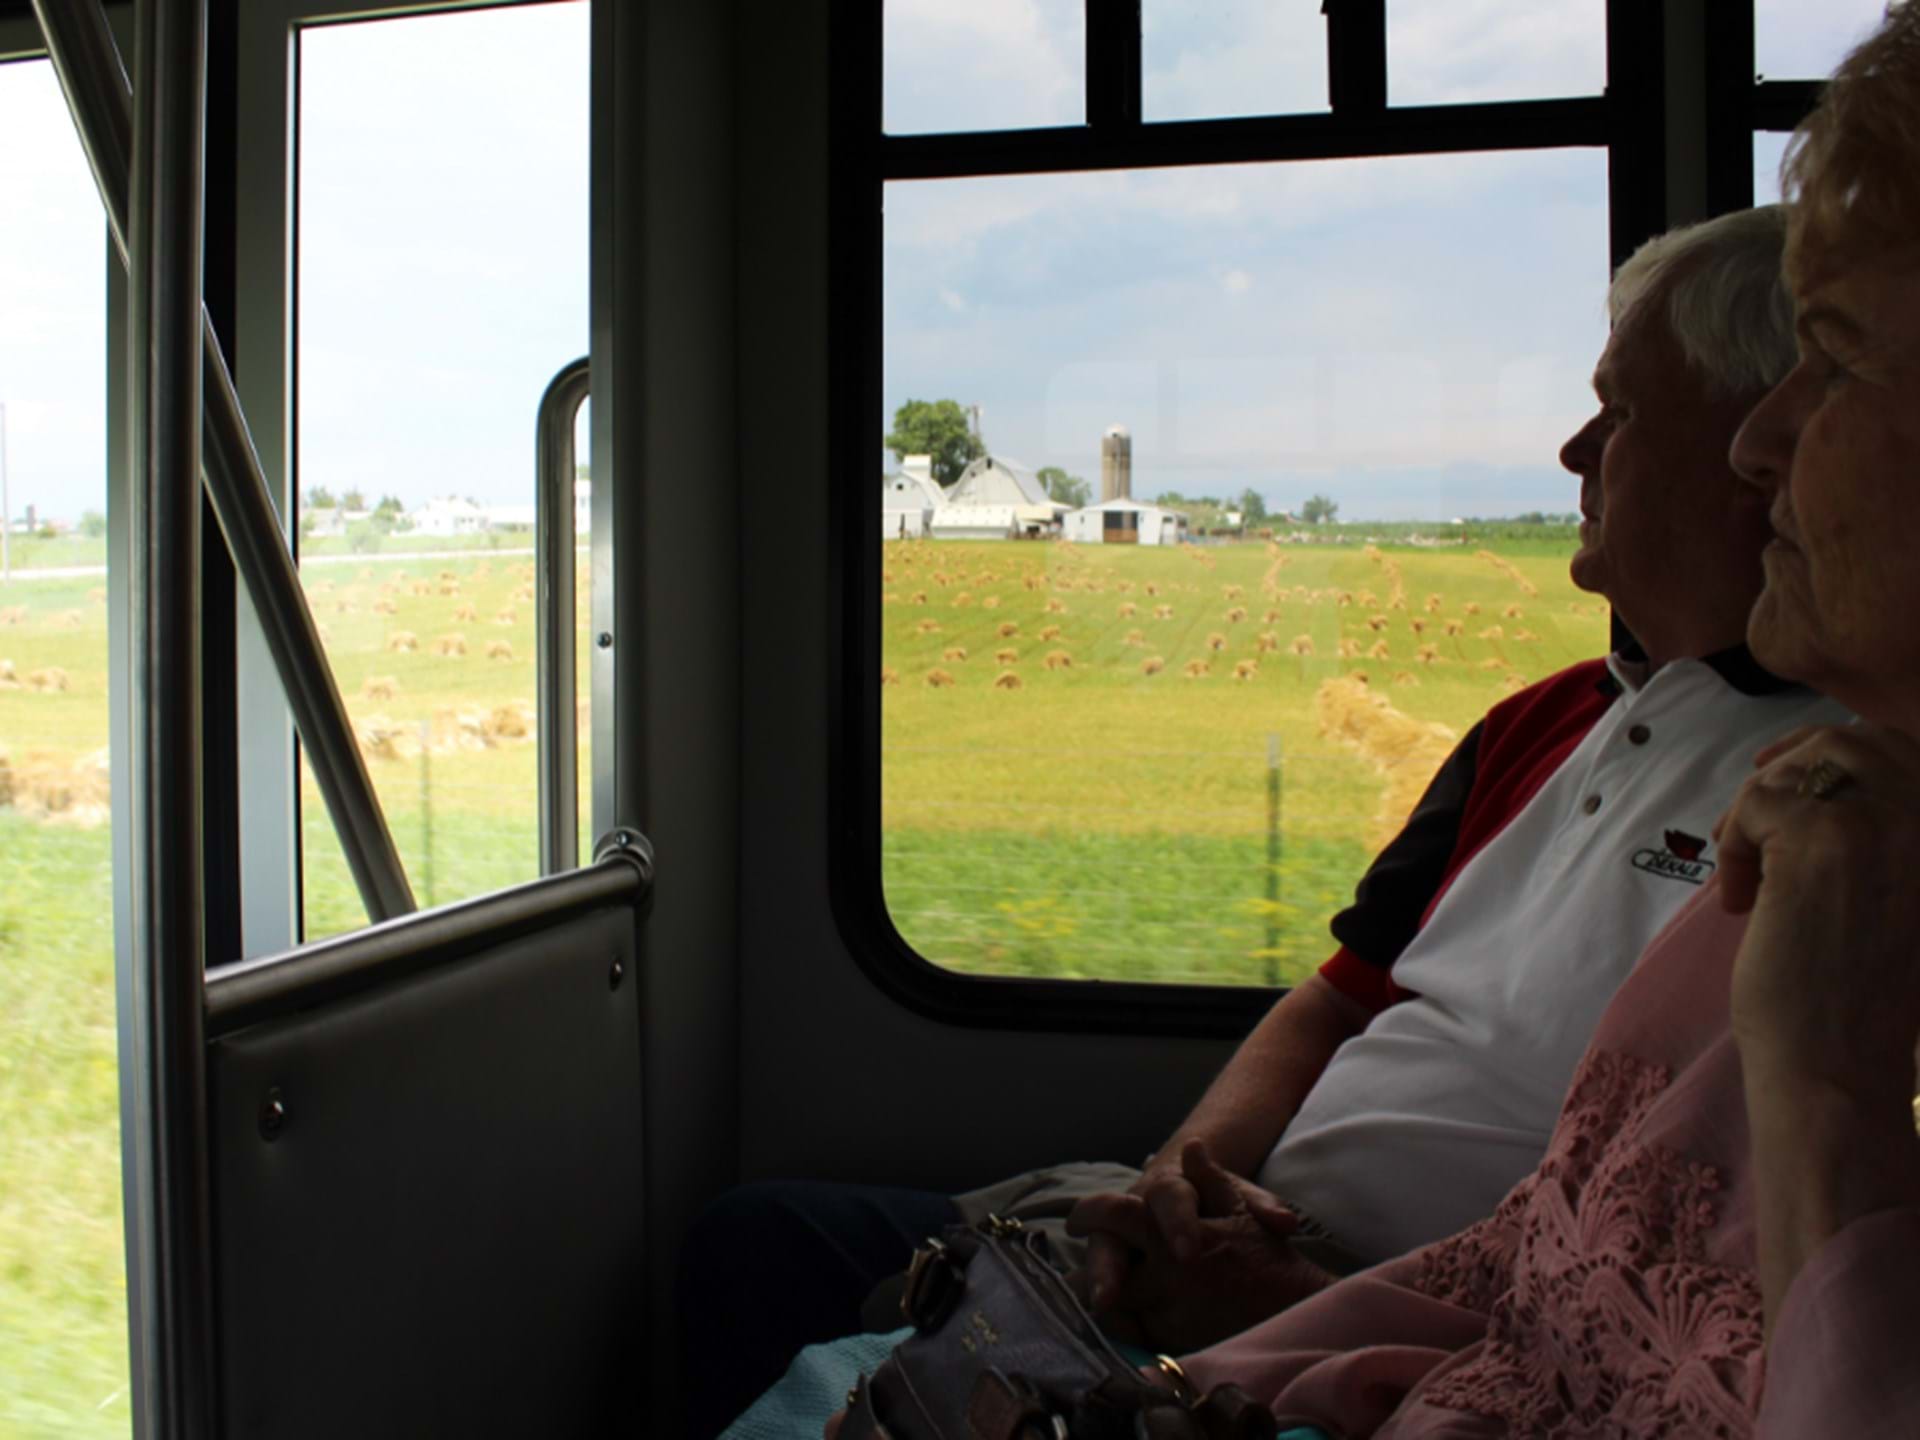 Tours of the Kalona Amish community